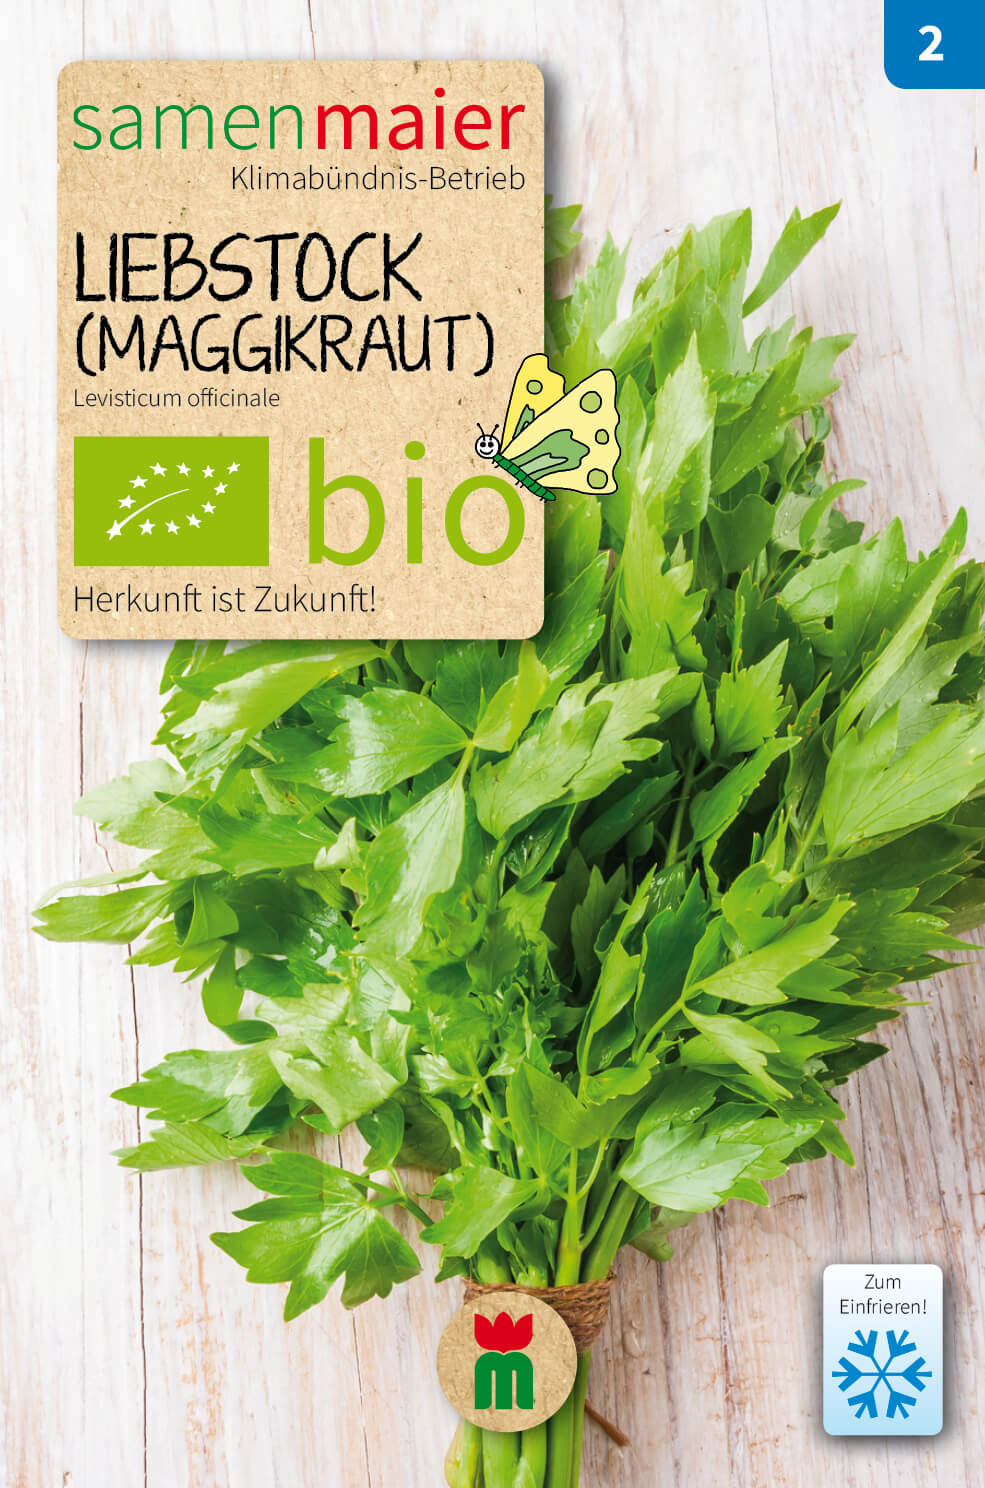 Beet-Box "Für Suppenköche" | BIO Gemüsesamen-Sets von Samen Maier